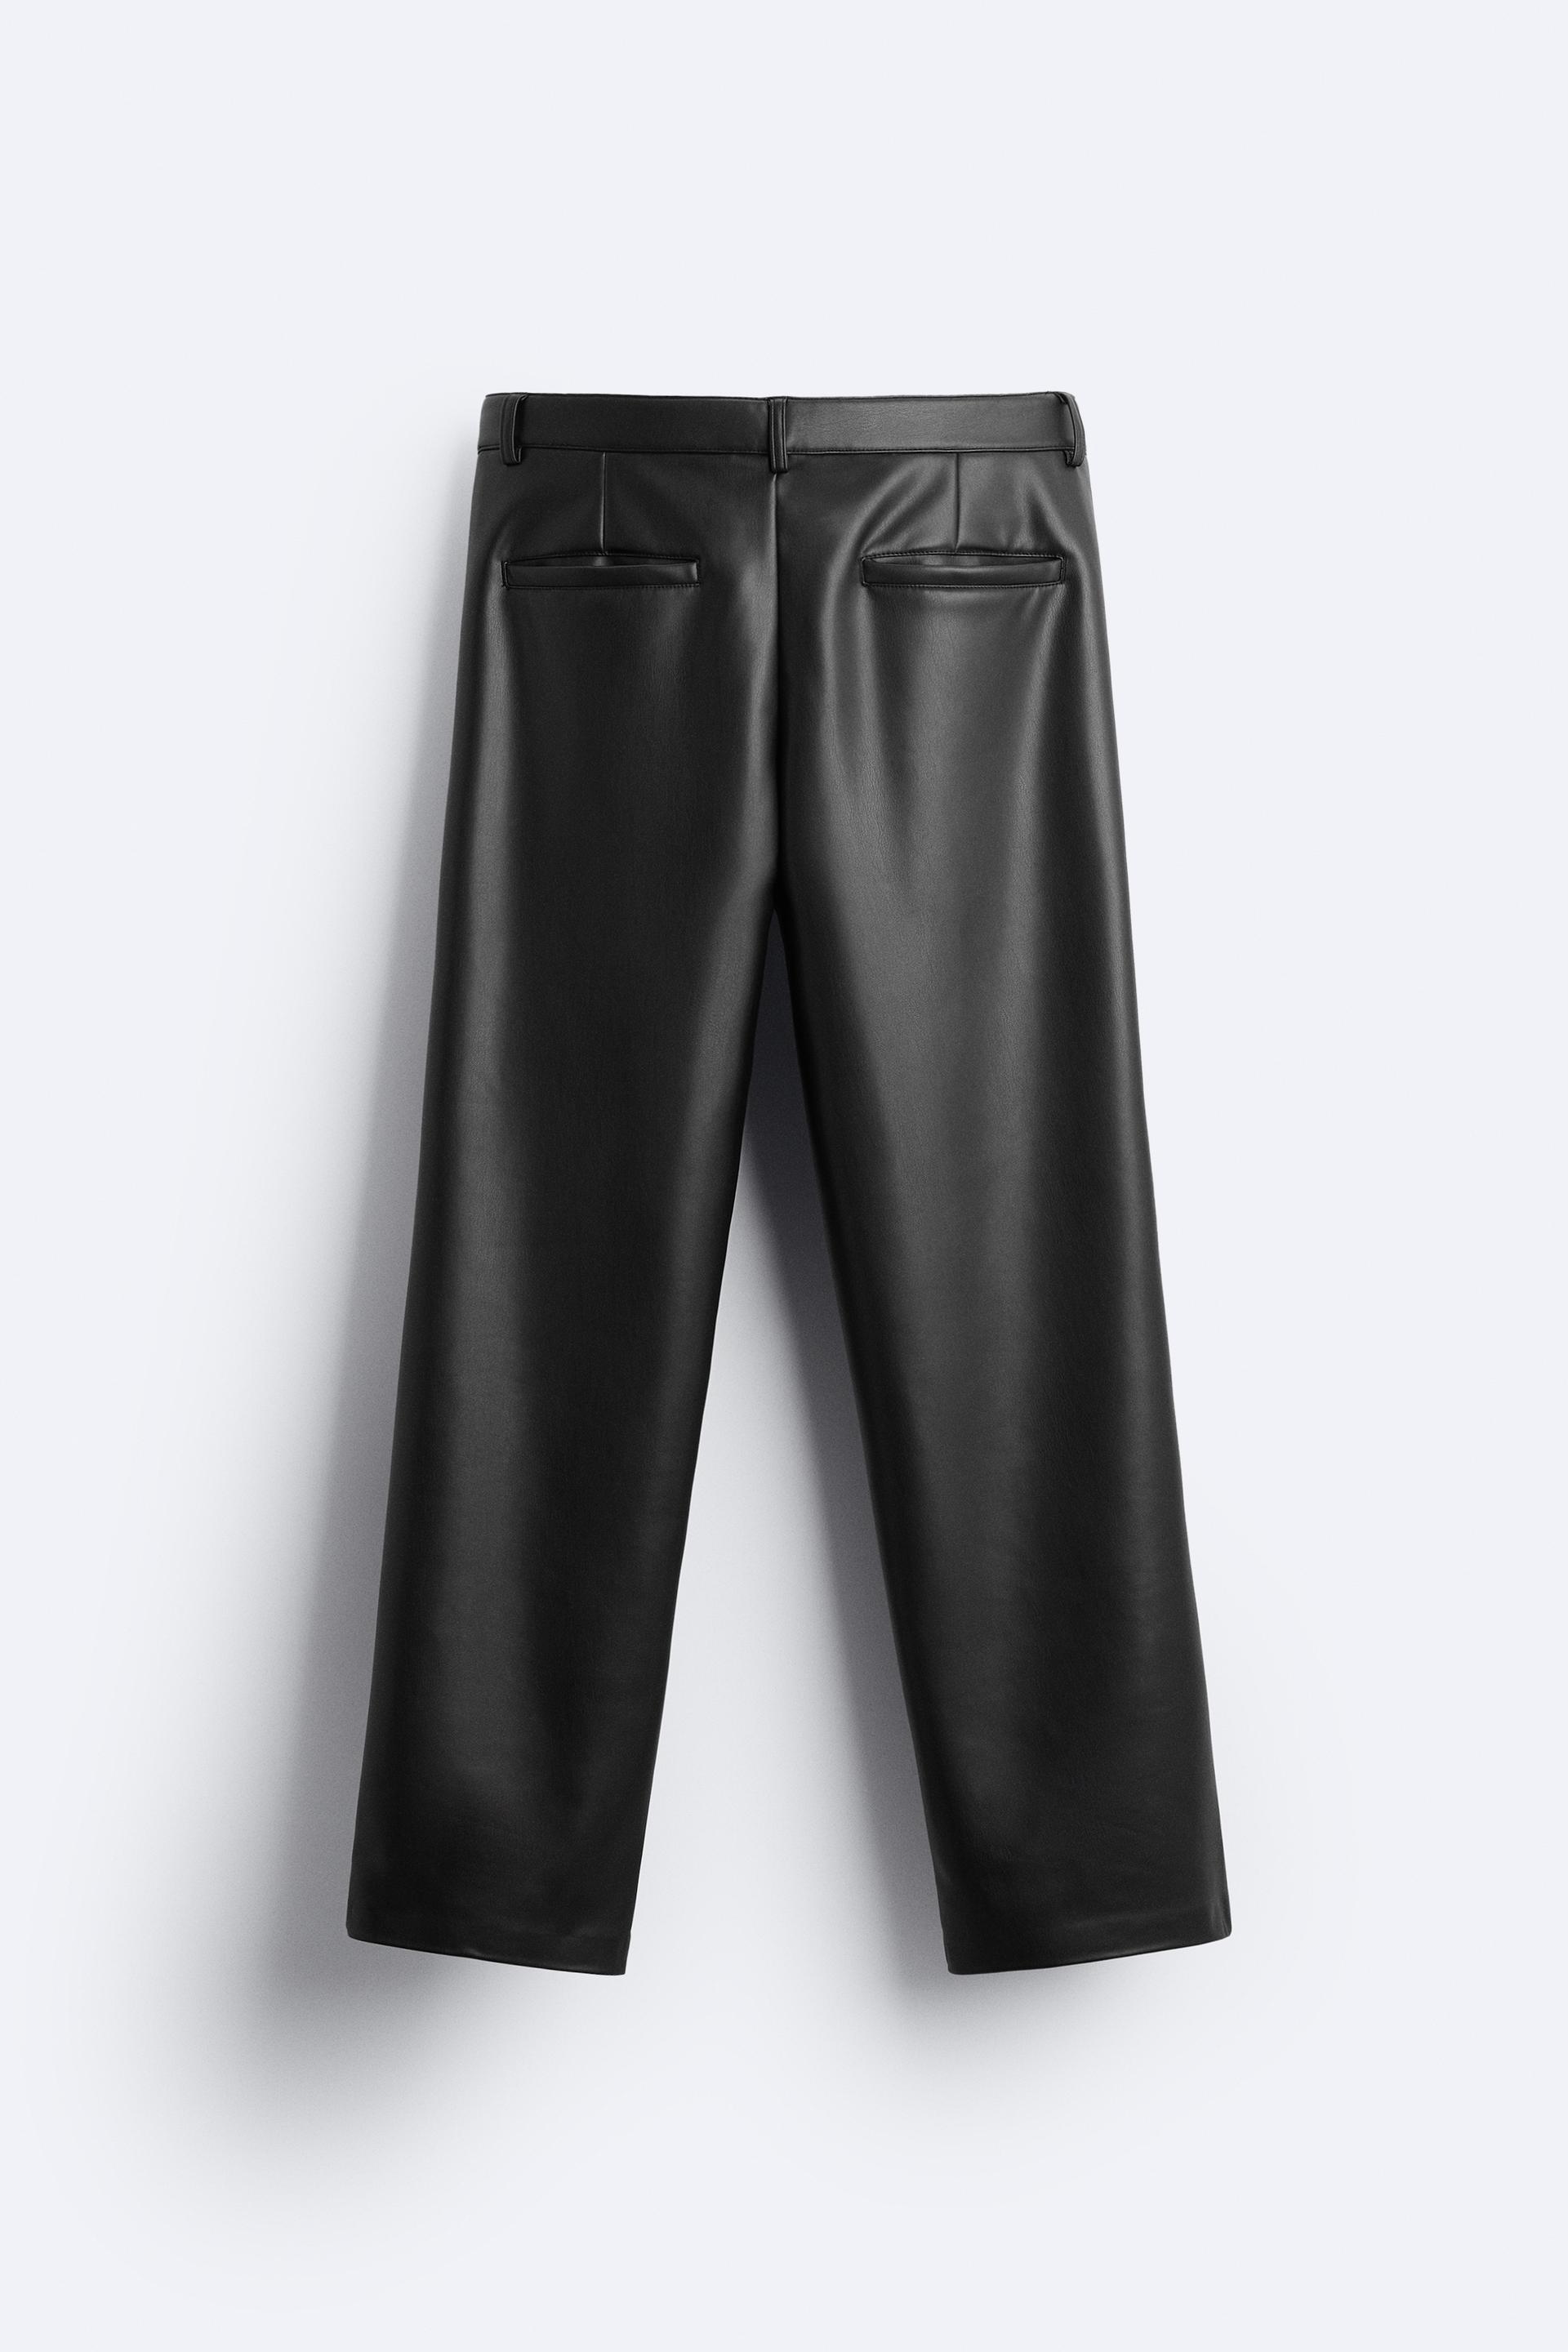 ZARA faux leather pants Size Xs 